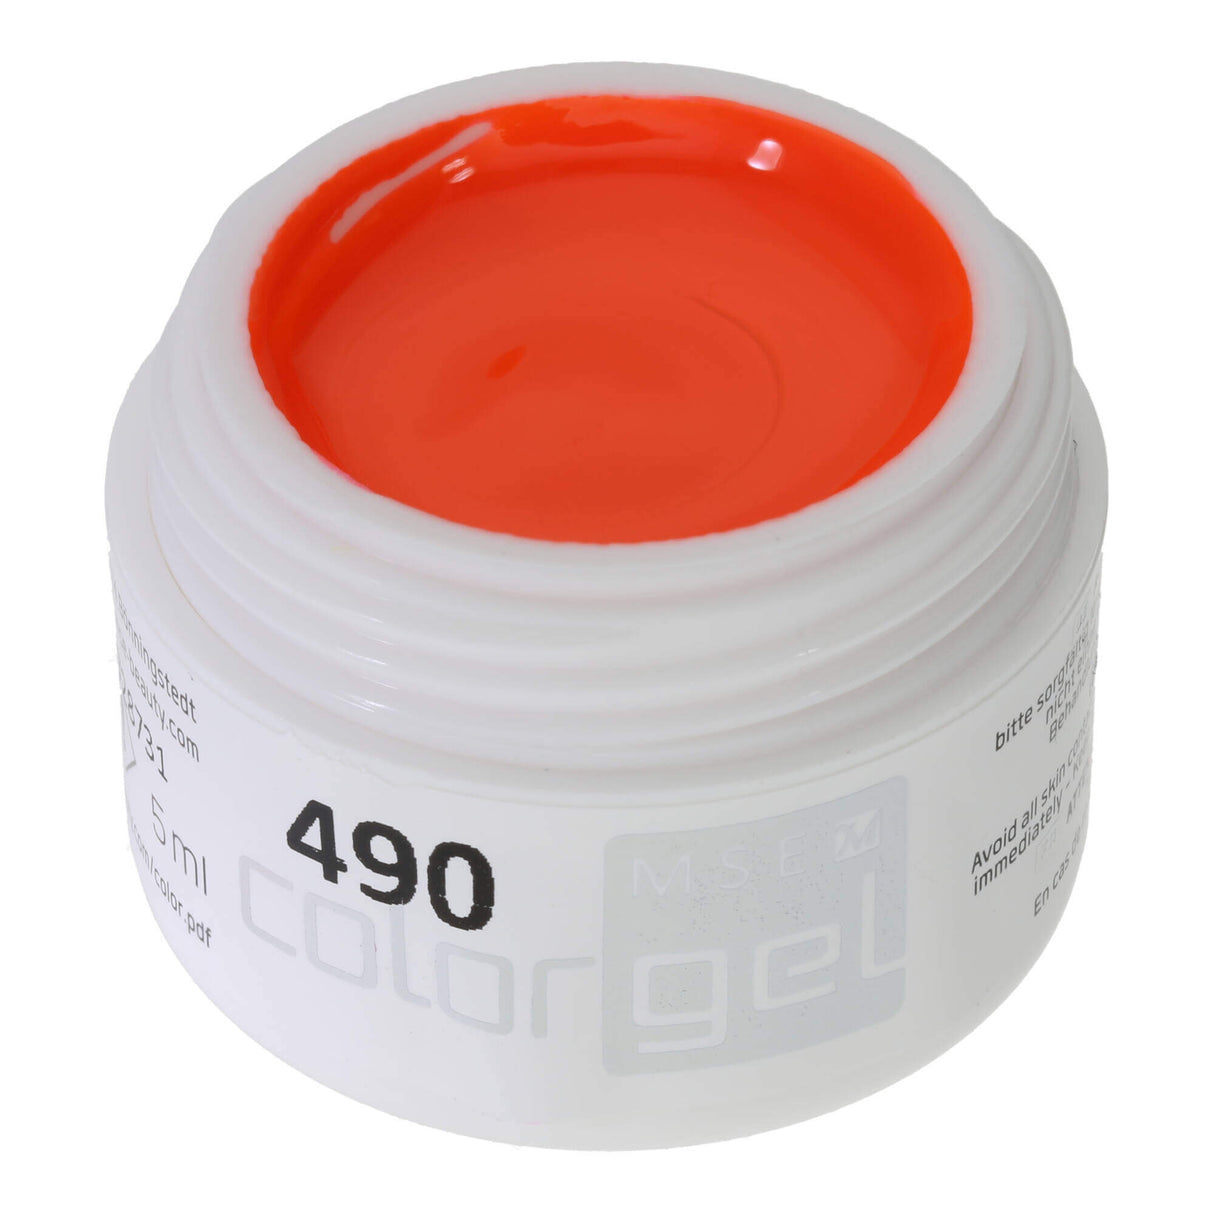 # 490 Premium-PURE Color Gel 5ml màu cam neon